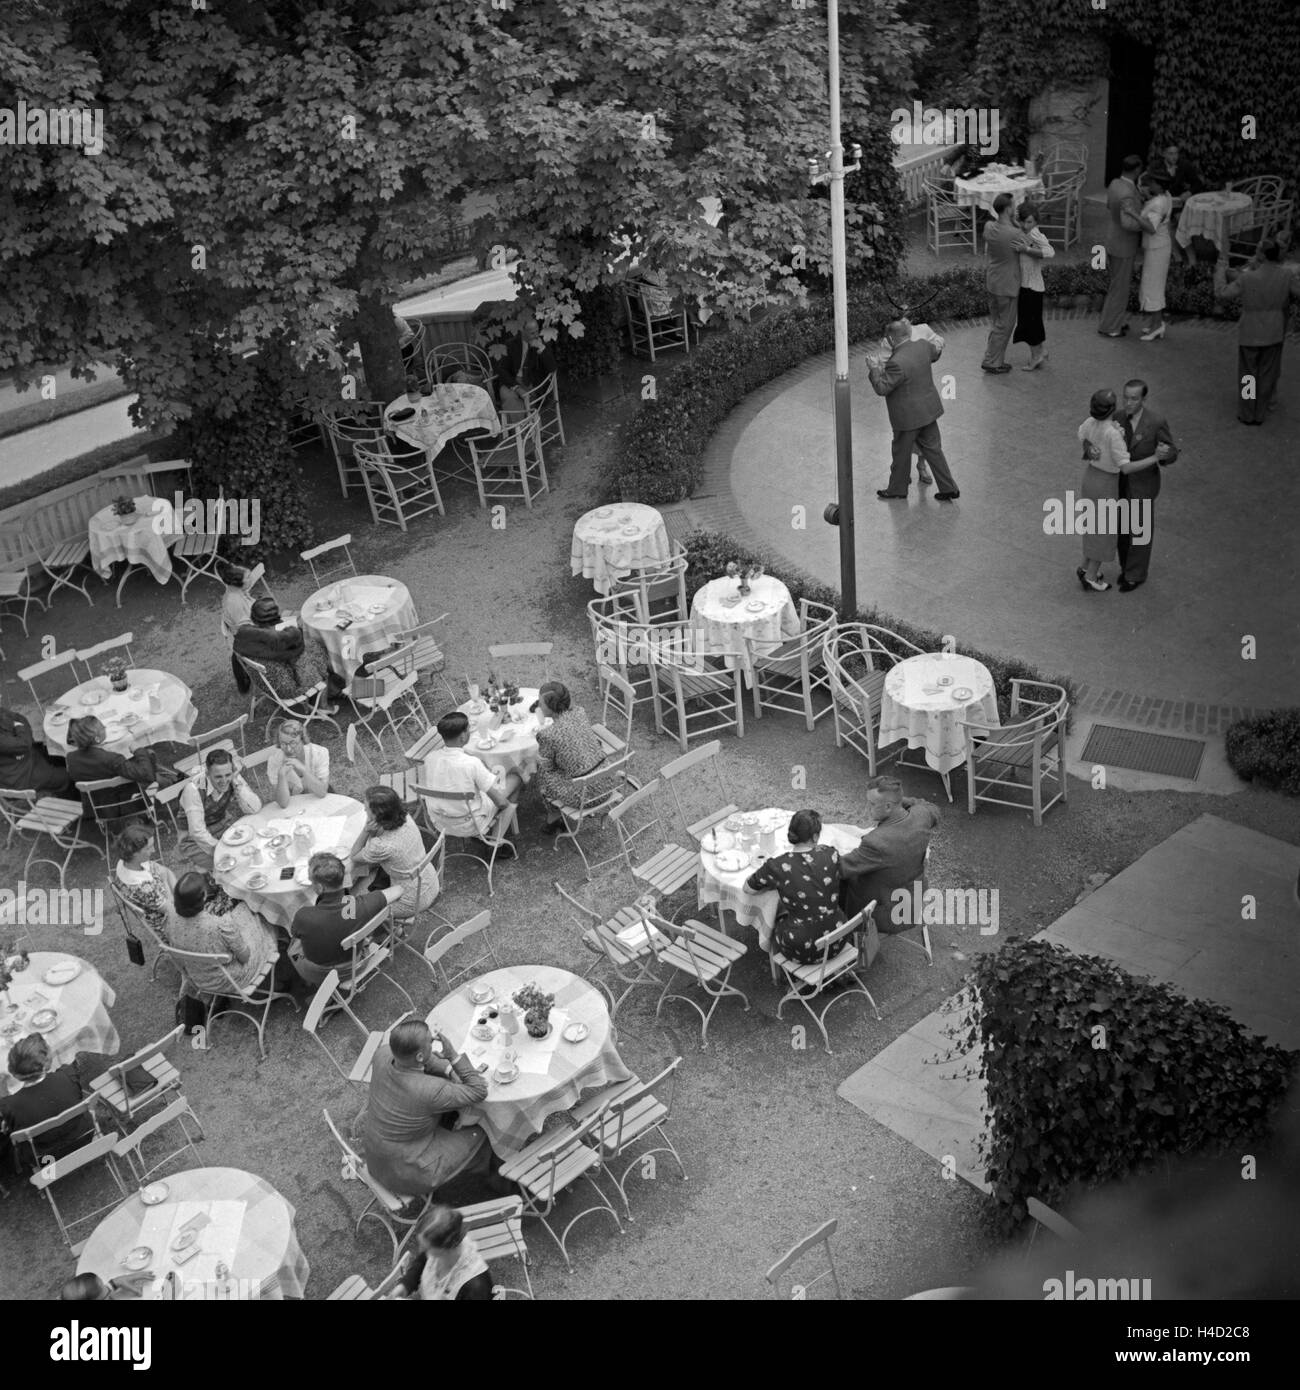 Außengastronomie mit einer Tische Tanzfläche dans Wildbad im Schwarzwald, Deutschland 1930 er Jahre. Des tables d'une gastronomie et dancefloor à Wildbad en Forêt Noire, Allemagne 1930. Banque D'Images